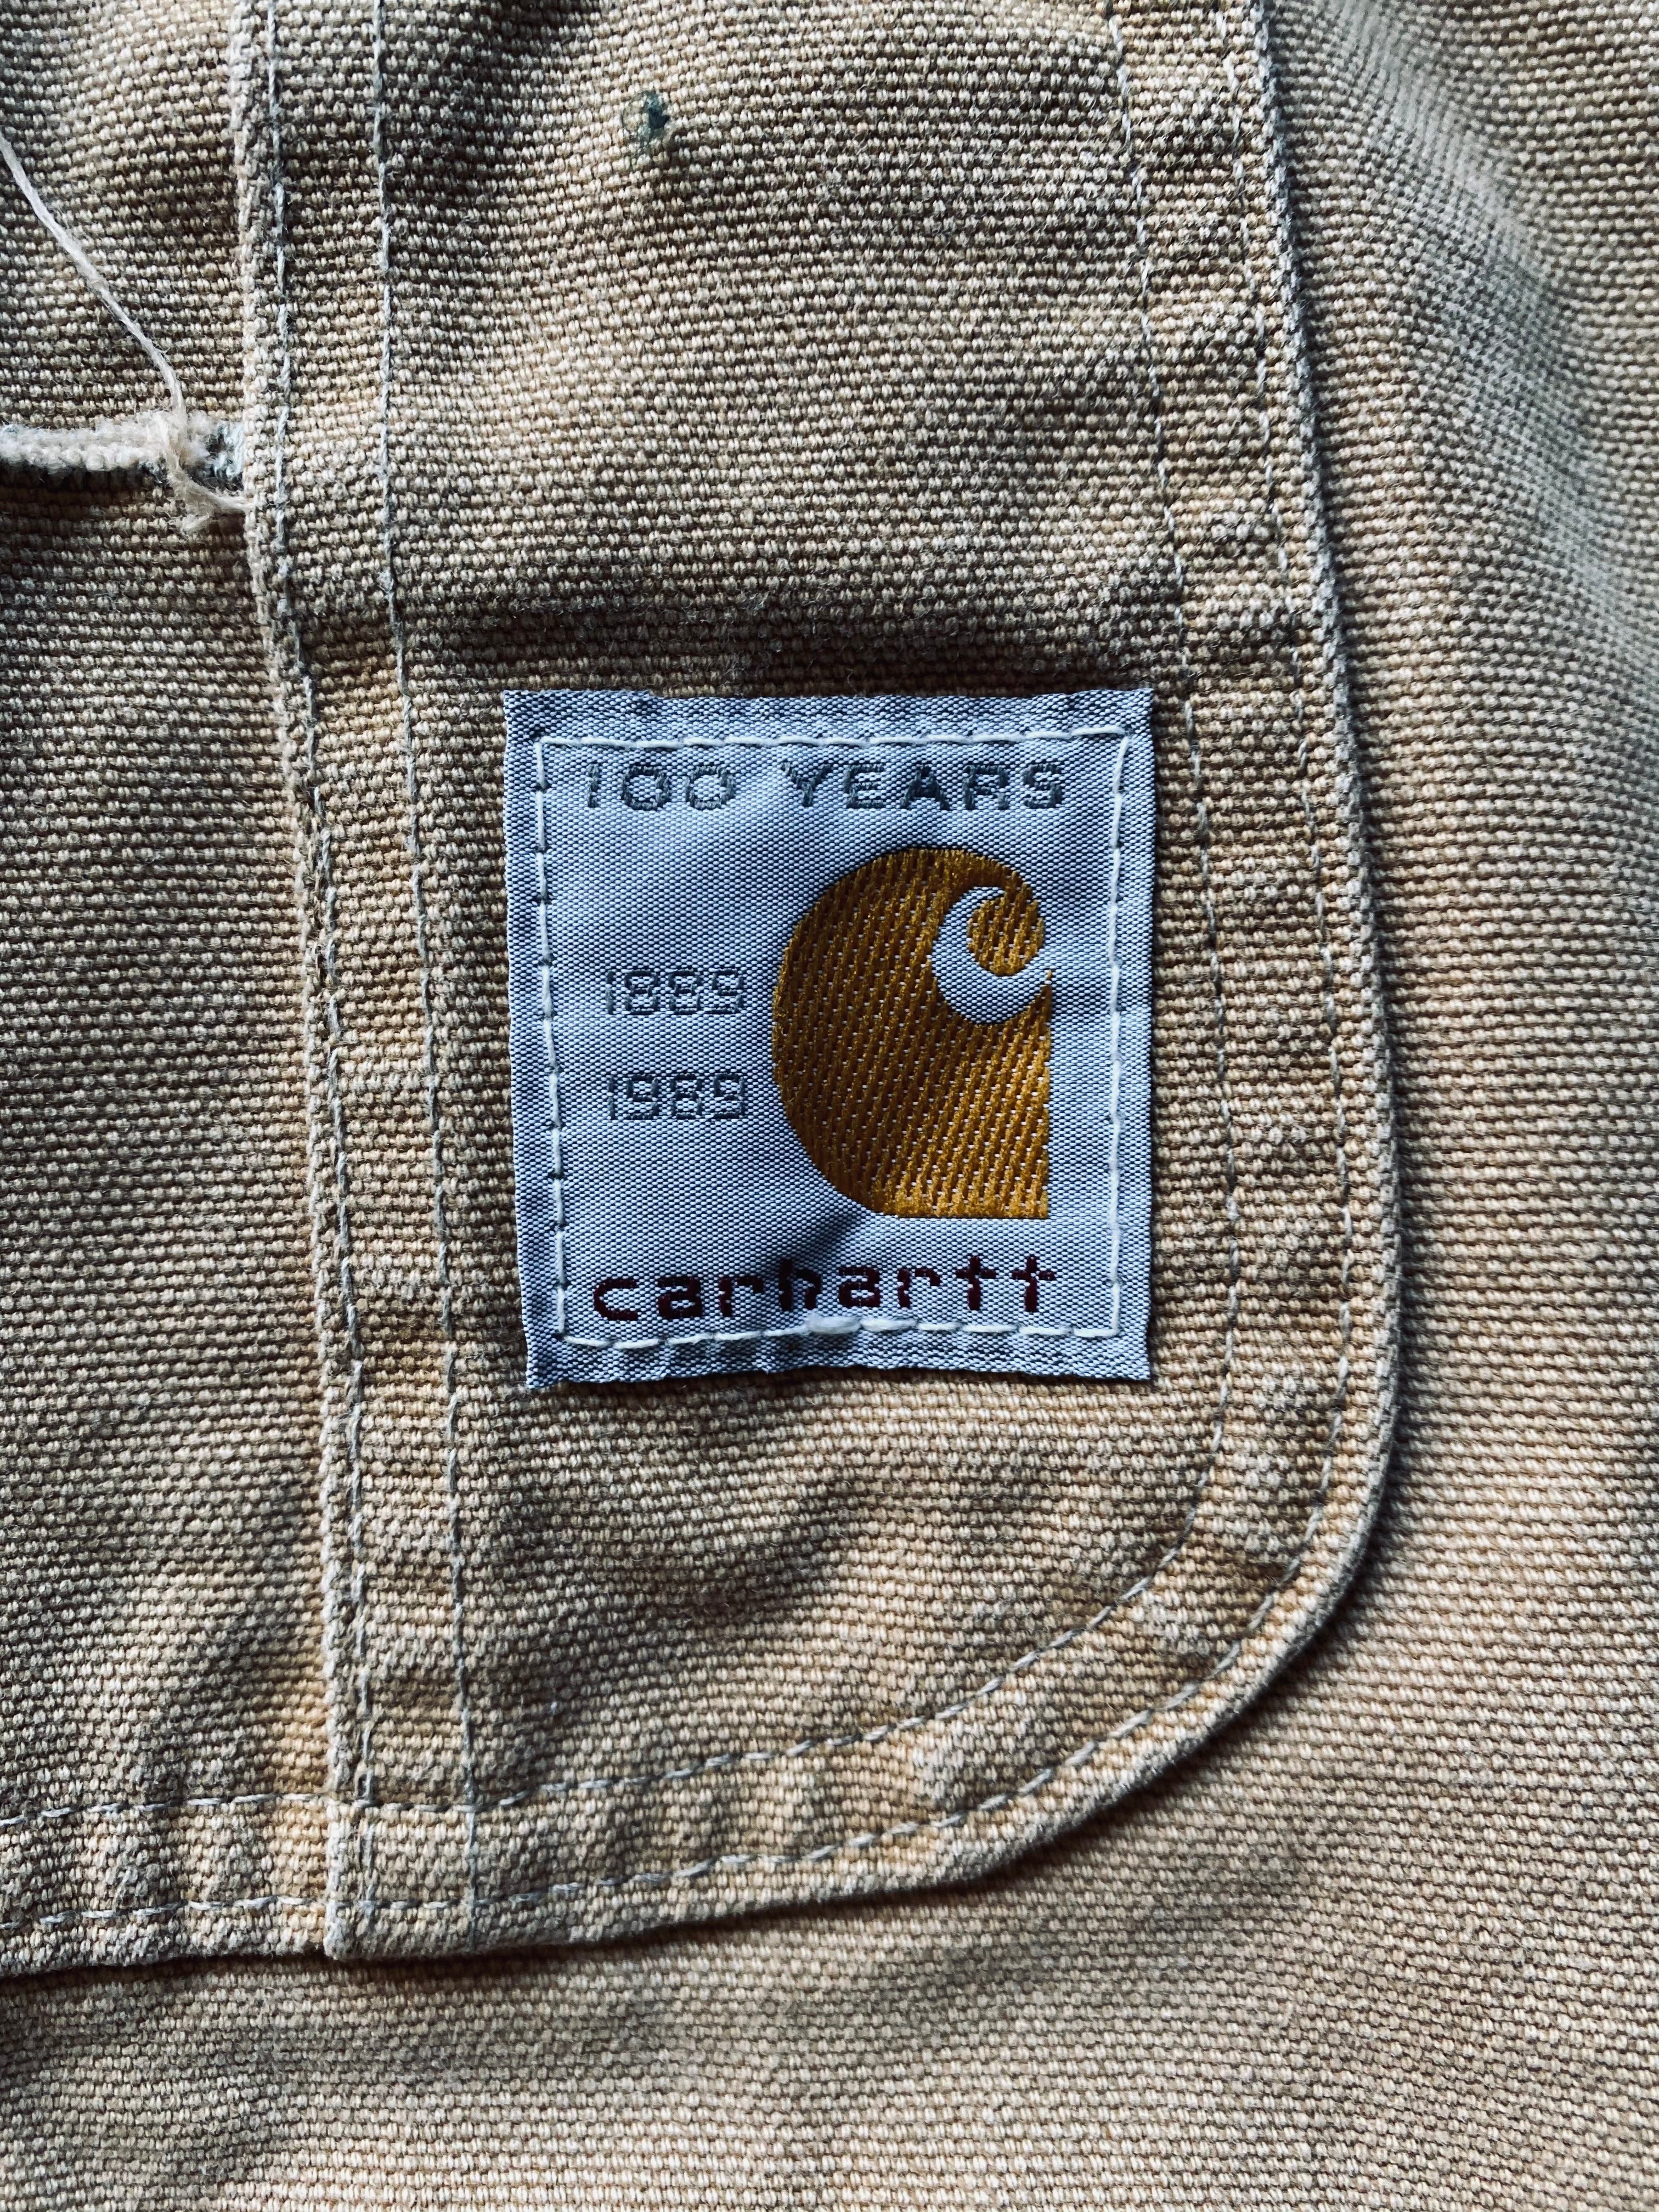 1989 Carhartt 100 Year Anniversary Overalls